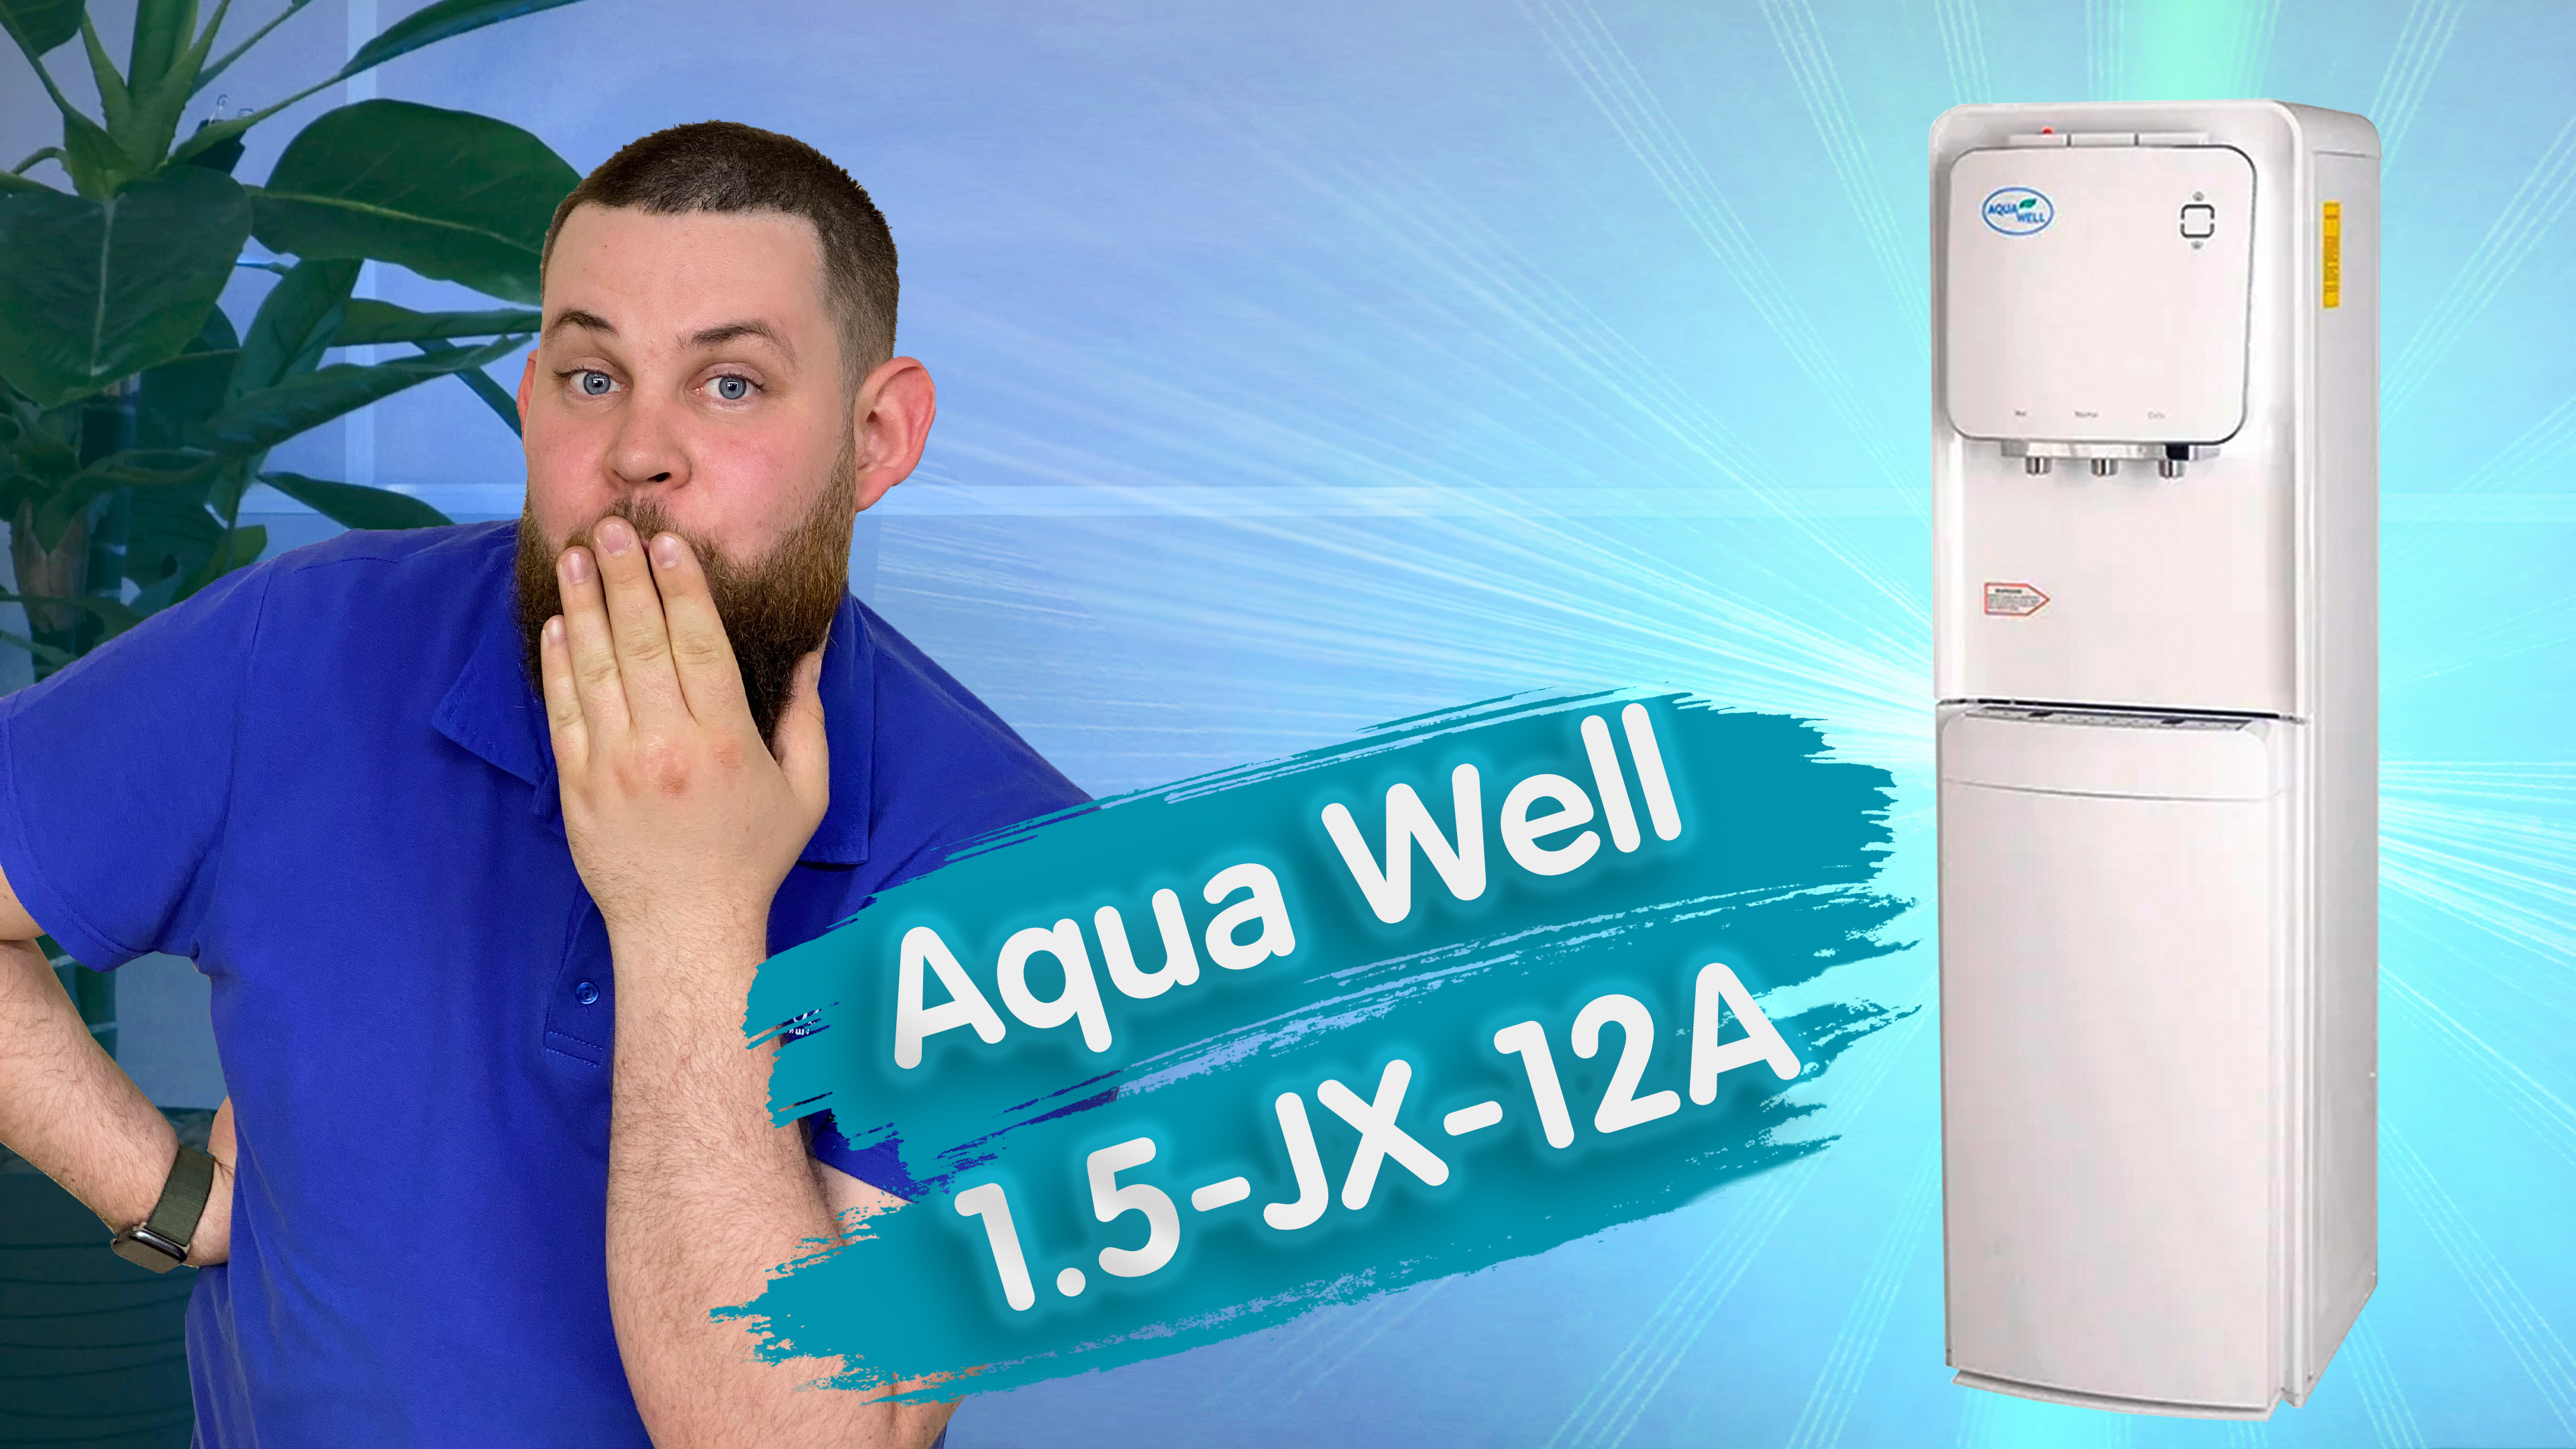 Обзор кулера для воды Aqua Well 1.5-JX-12A